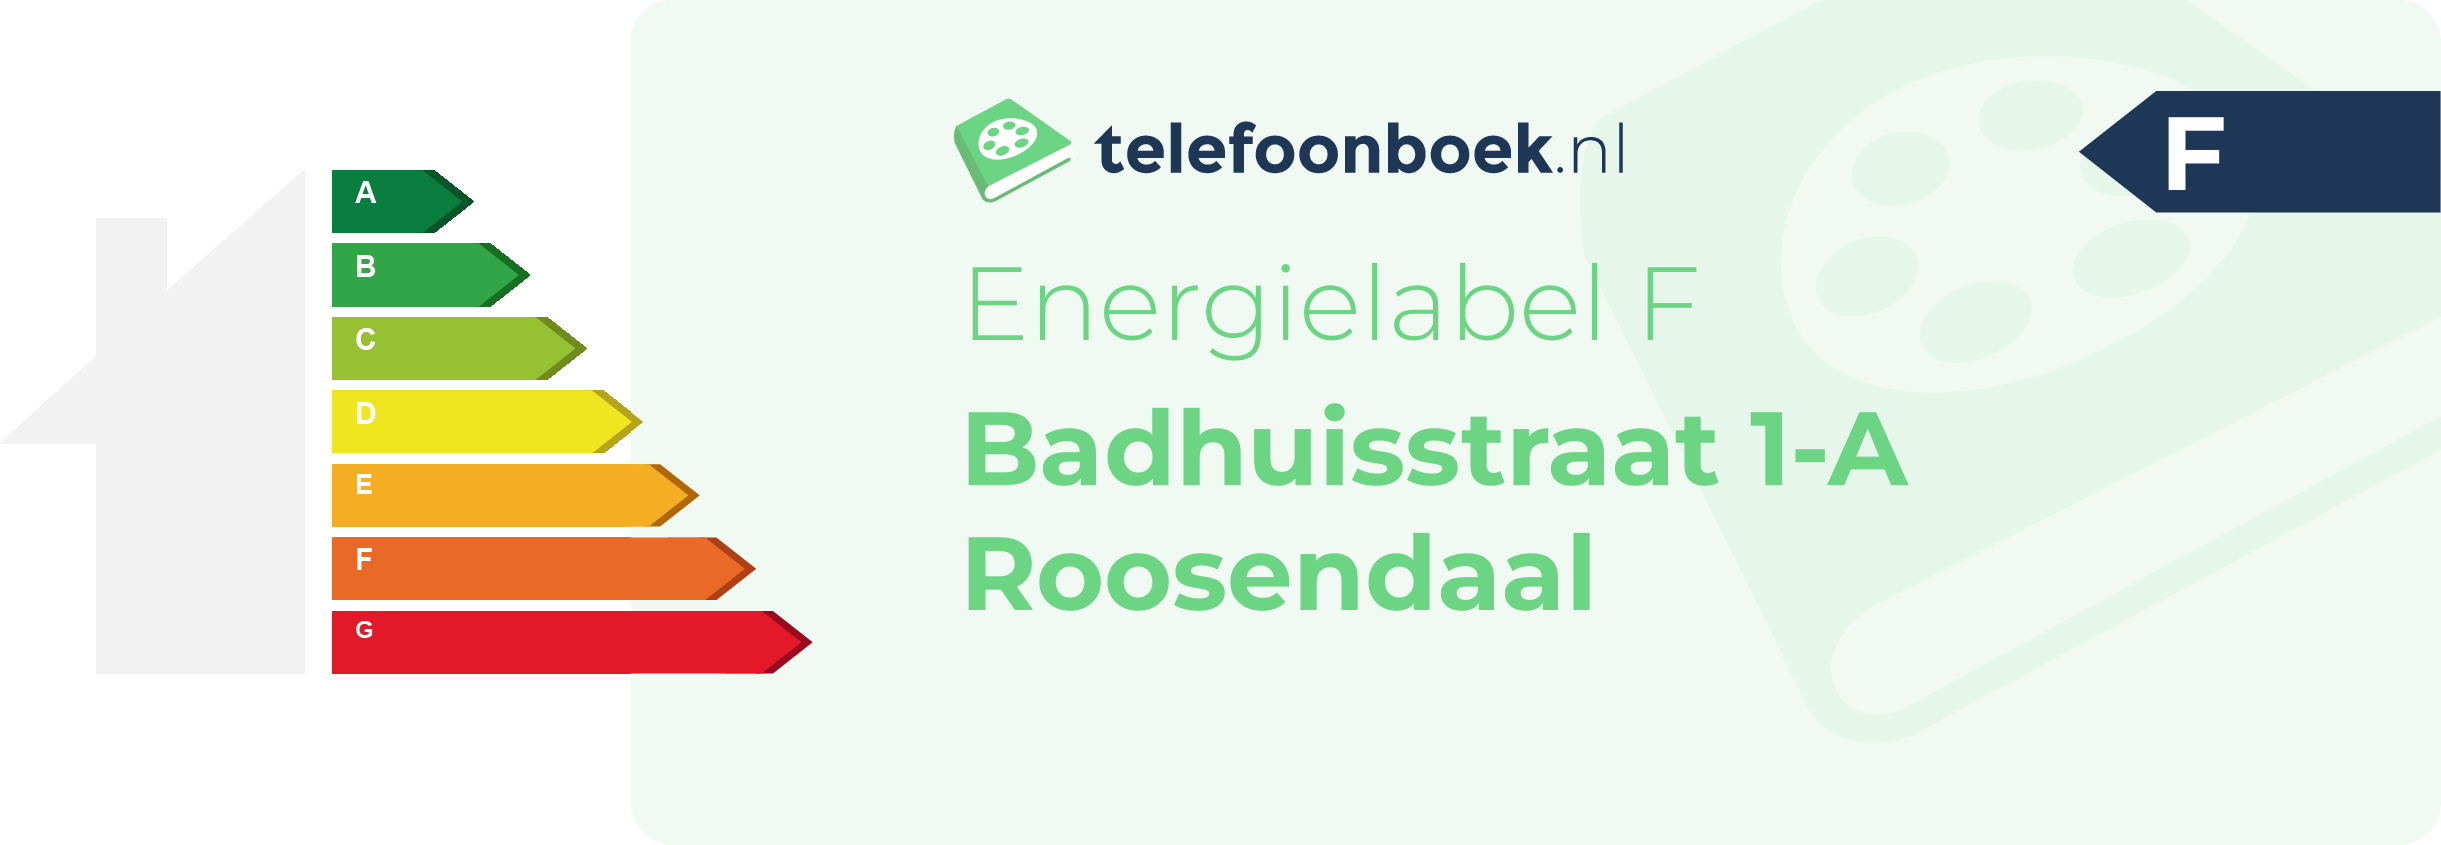 Energielabel Badhuisstraat 1-A Roosendaal